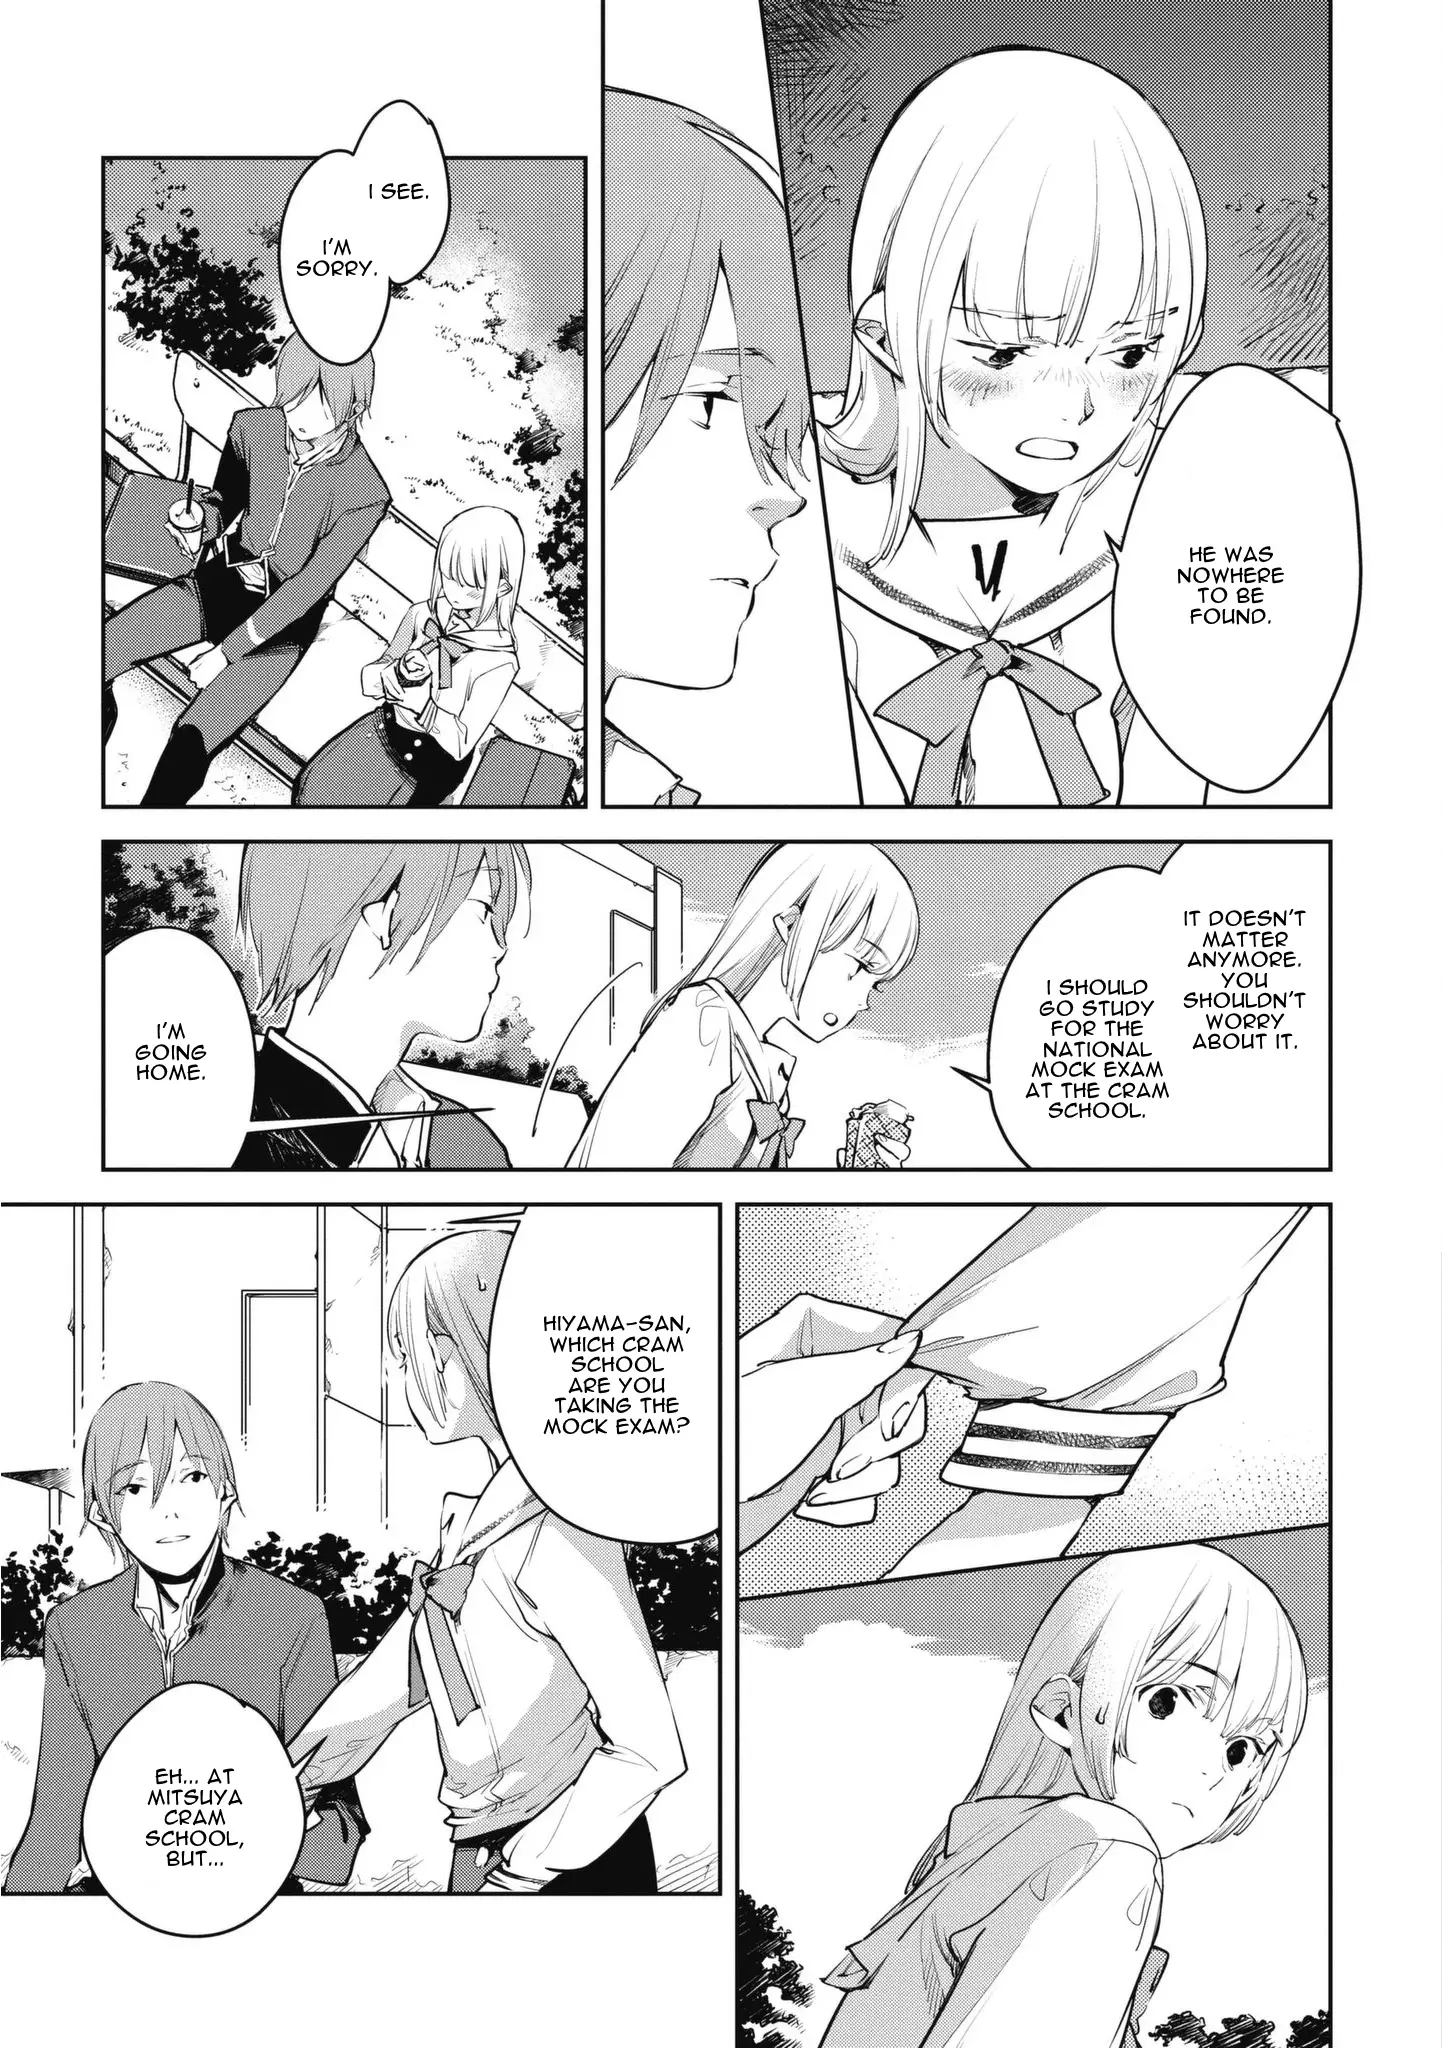 Okashiratsuki - 7 page 19